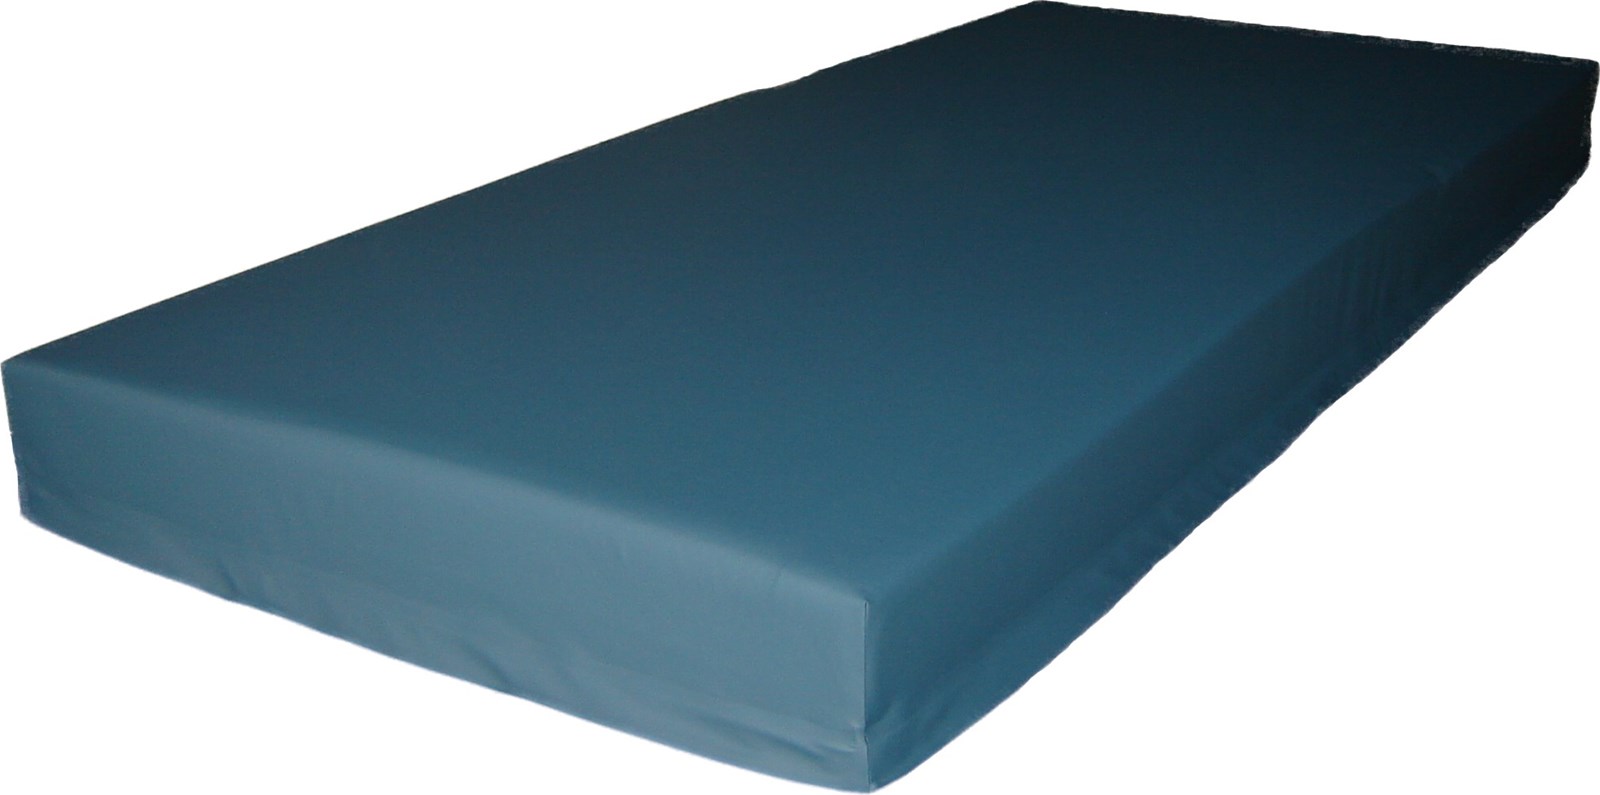 mattress cover vinyl zippered heaby duty